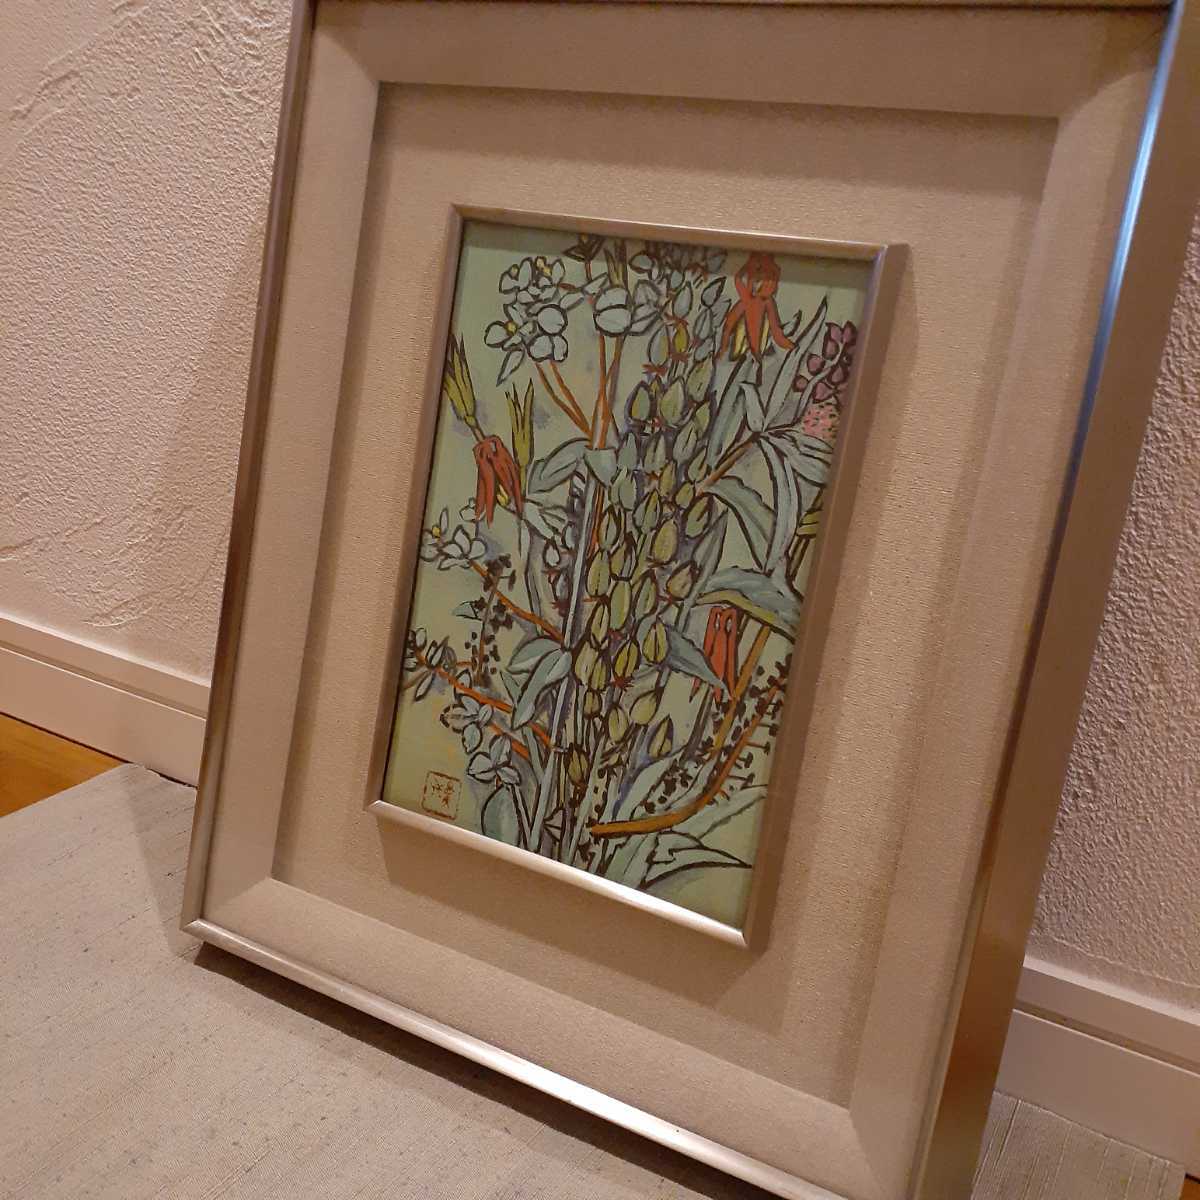 山田则夫的日本画, 花朵, 约 4.8 厘米 x 33 厘米 x 40 厘米, 绘画, 日本画, 花鸟, 野生动物